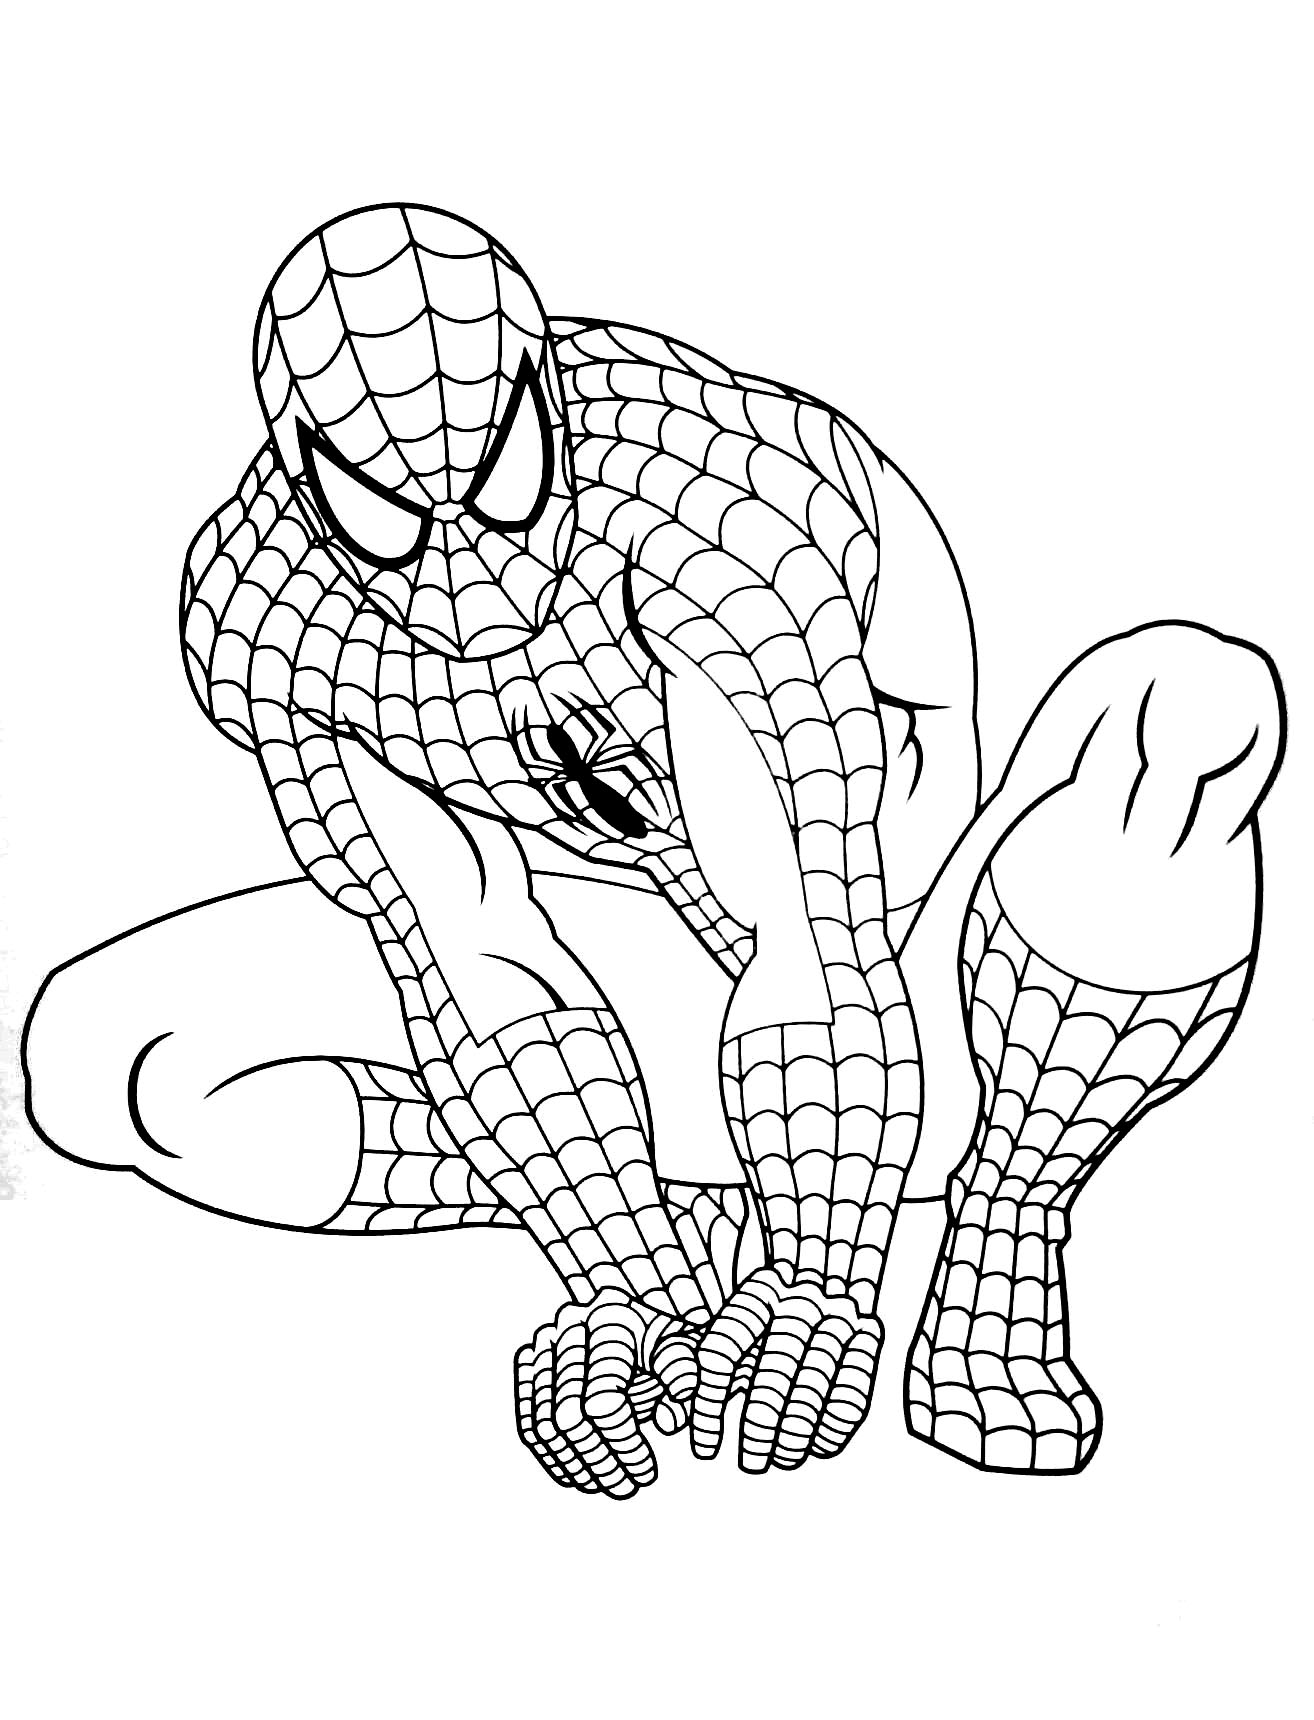 Coloriage De Spiderman A Imprimer Pour Enfants Coloriage Spiderman Coloriages Pour Enfants